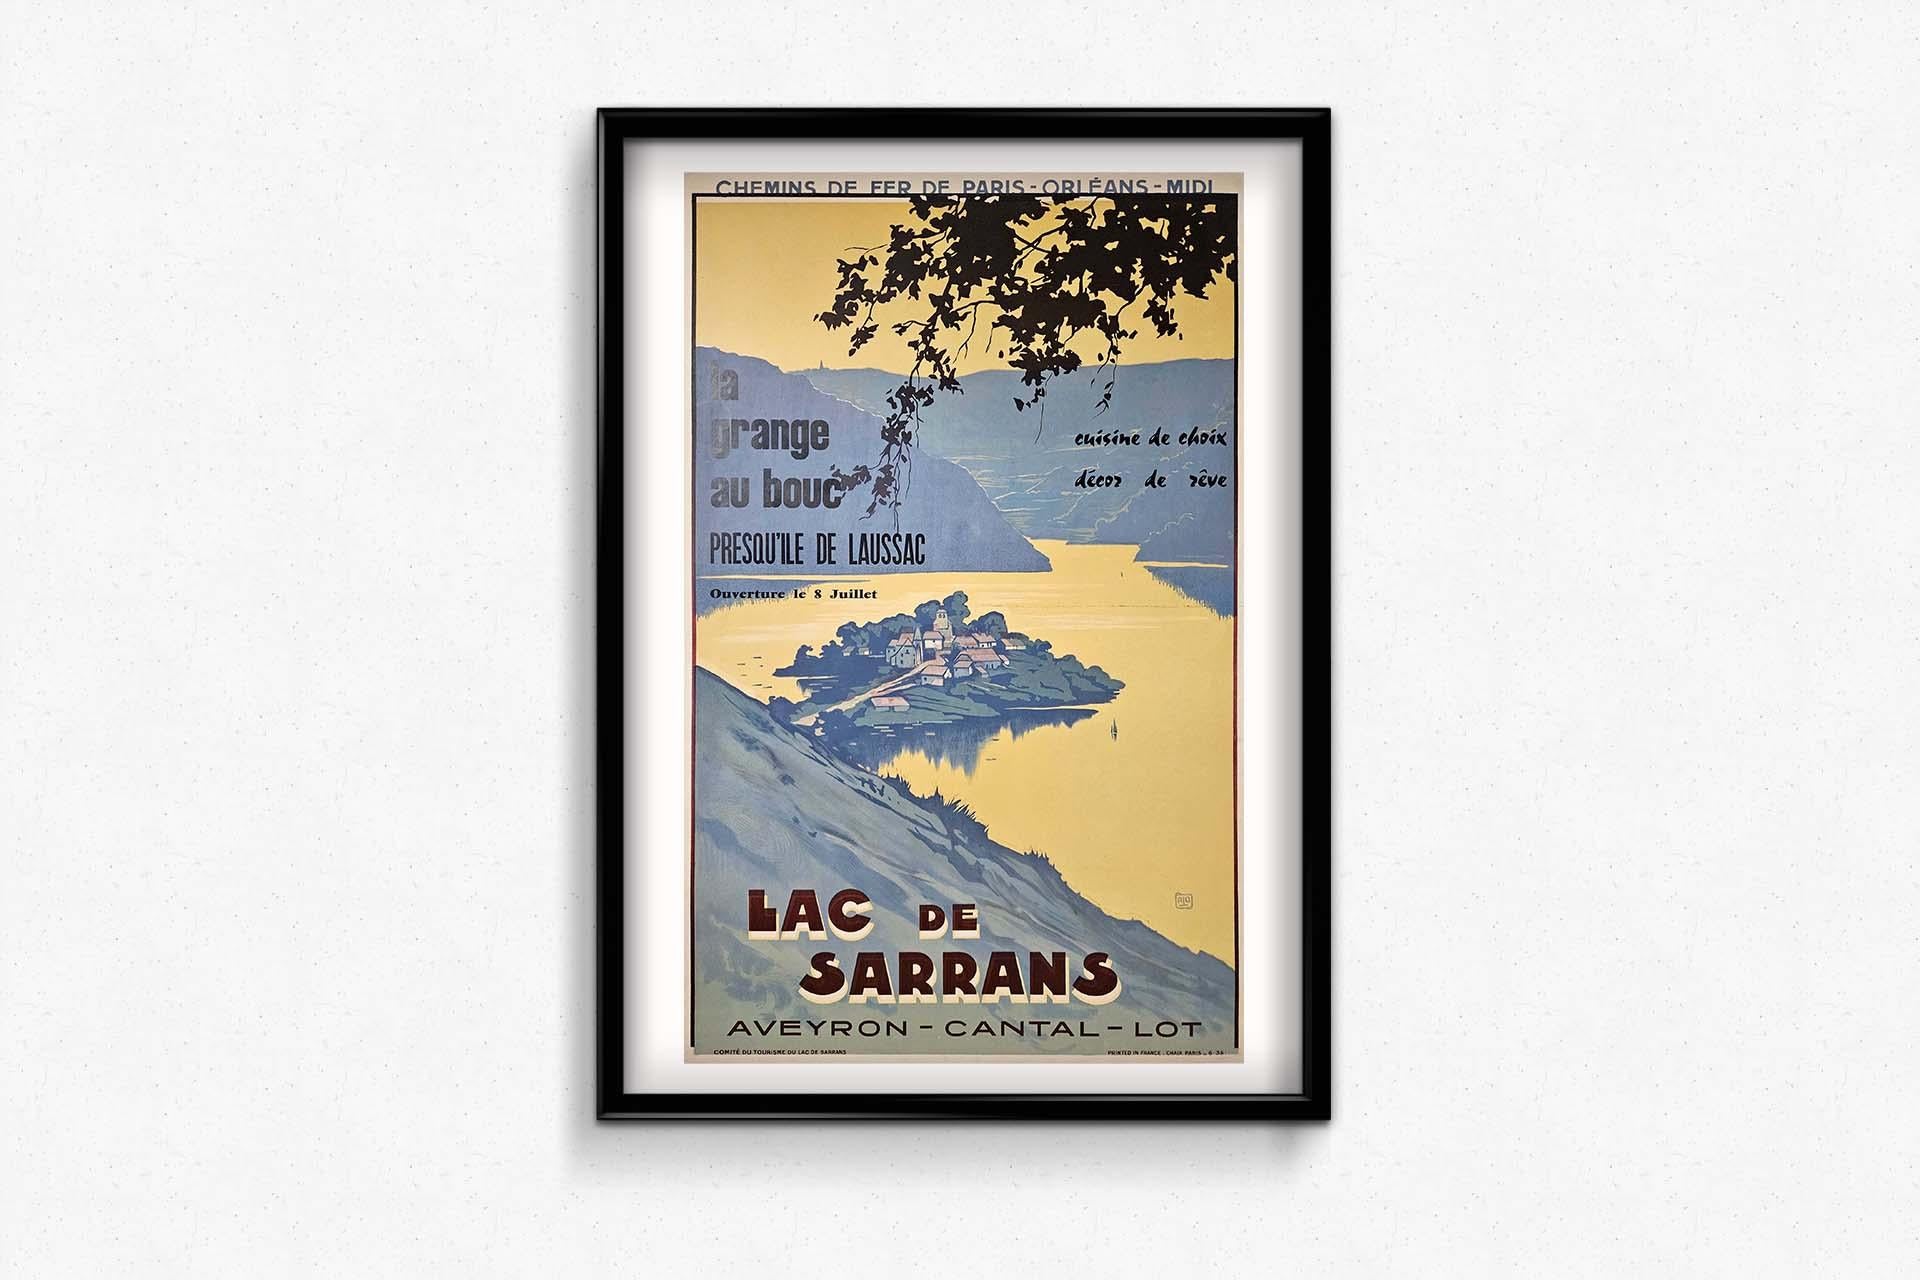 Das Plakat der Chemins de fer de Paris Orléans Midi von Alo aus dem Jahr 1935, auf dem der Lac de Sarrans und die malerische Halbinsel Laussac im Cantal und Lot zu sehen sind, entpuppt sich als ein Meisterwerk, das die Grenzen der Werbung